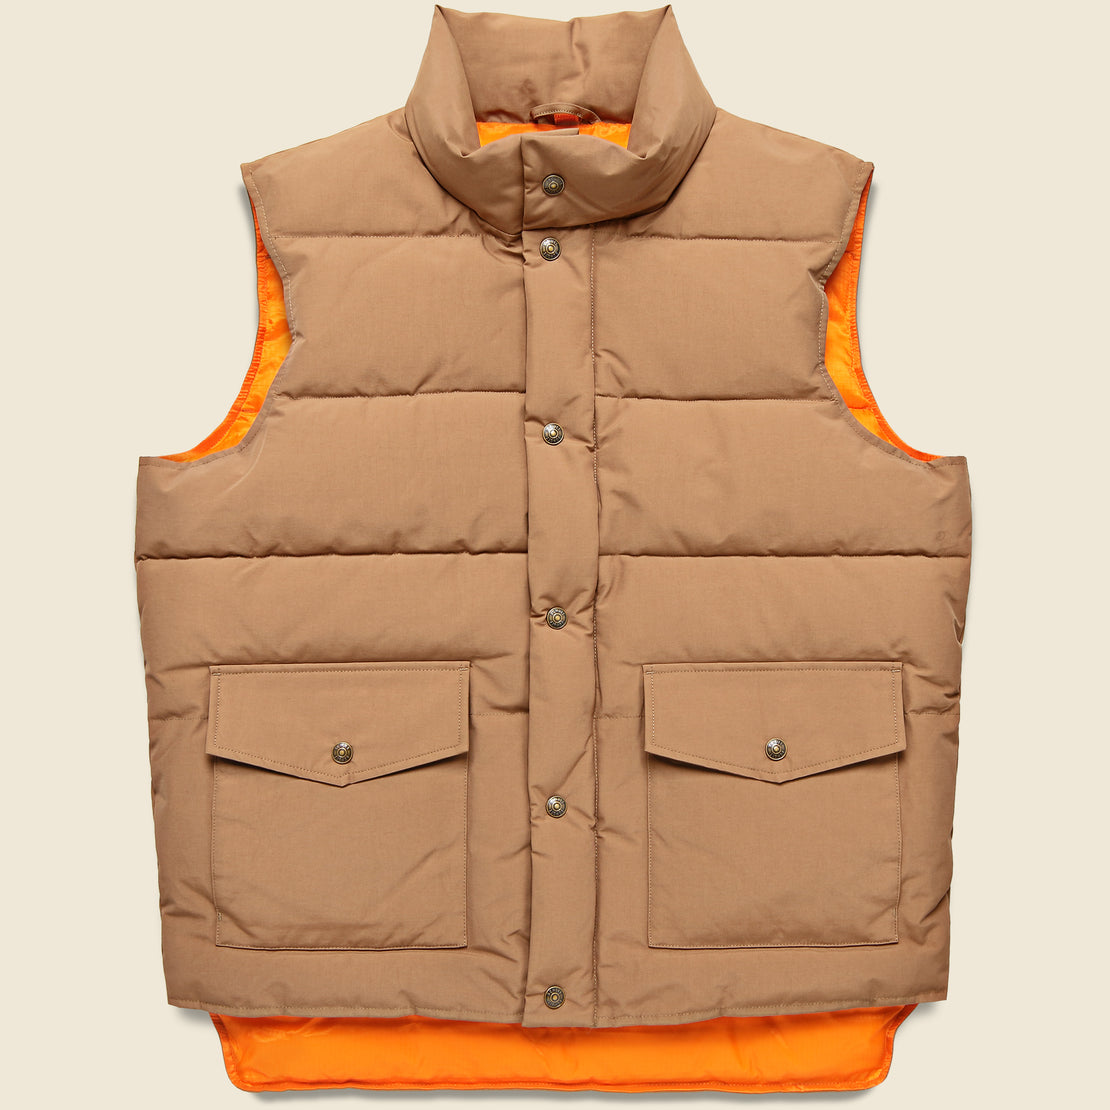 Outdoorsman Waxed Jacket - Wax Khaki - M, L, XL, XXL